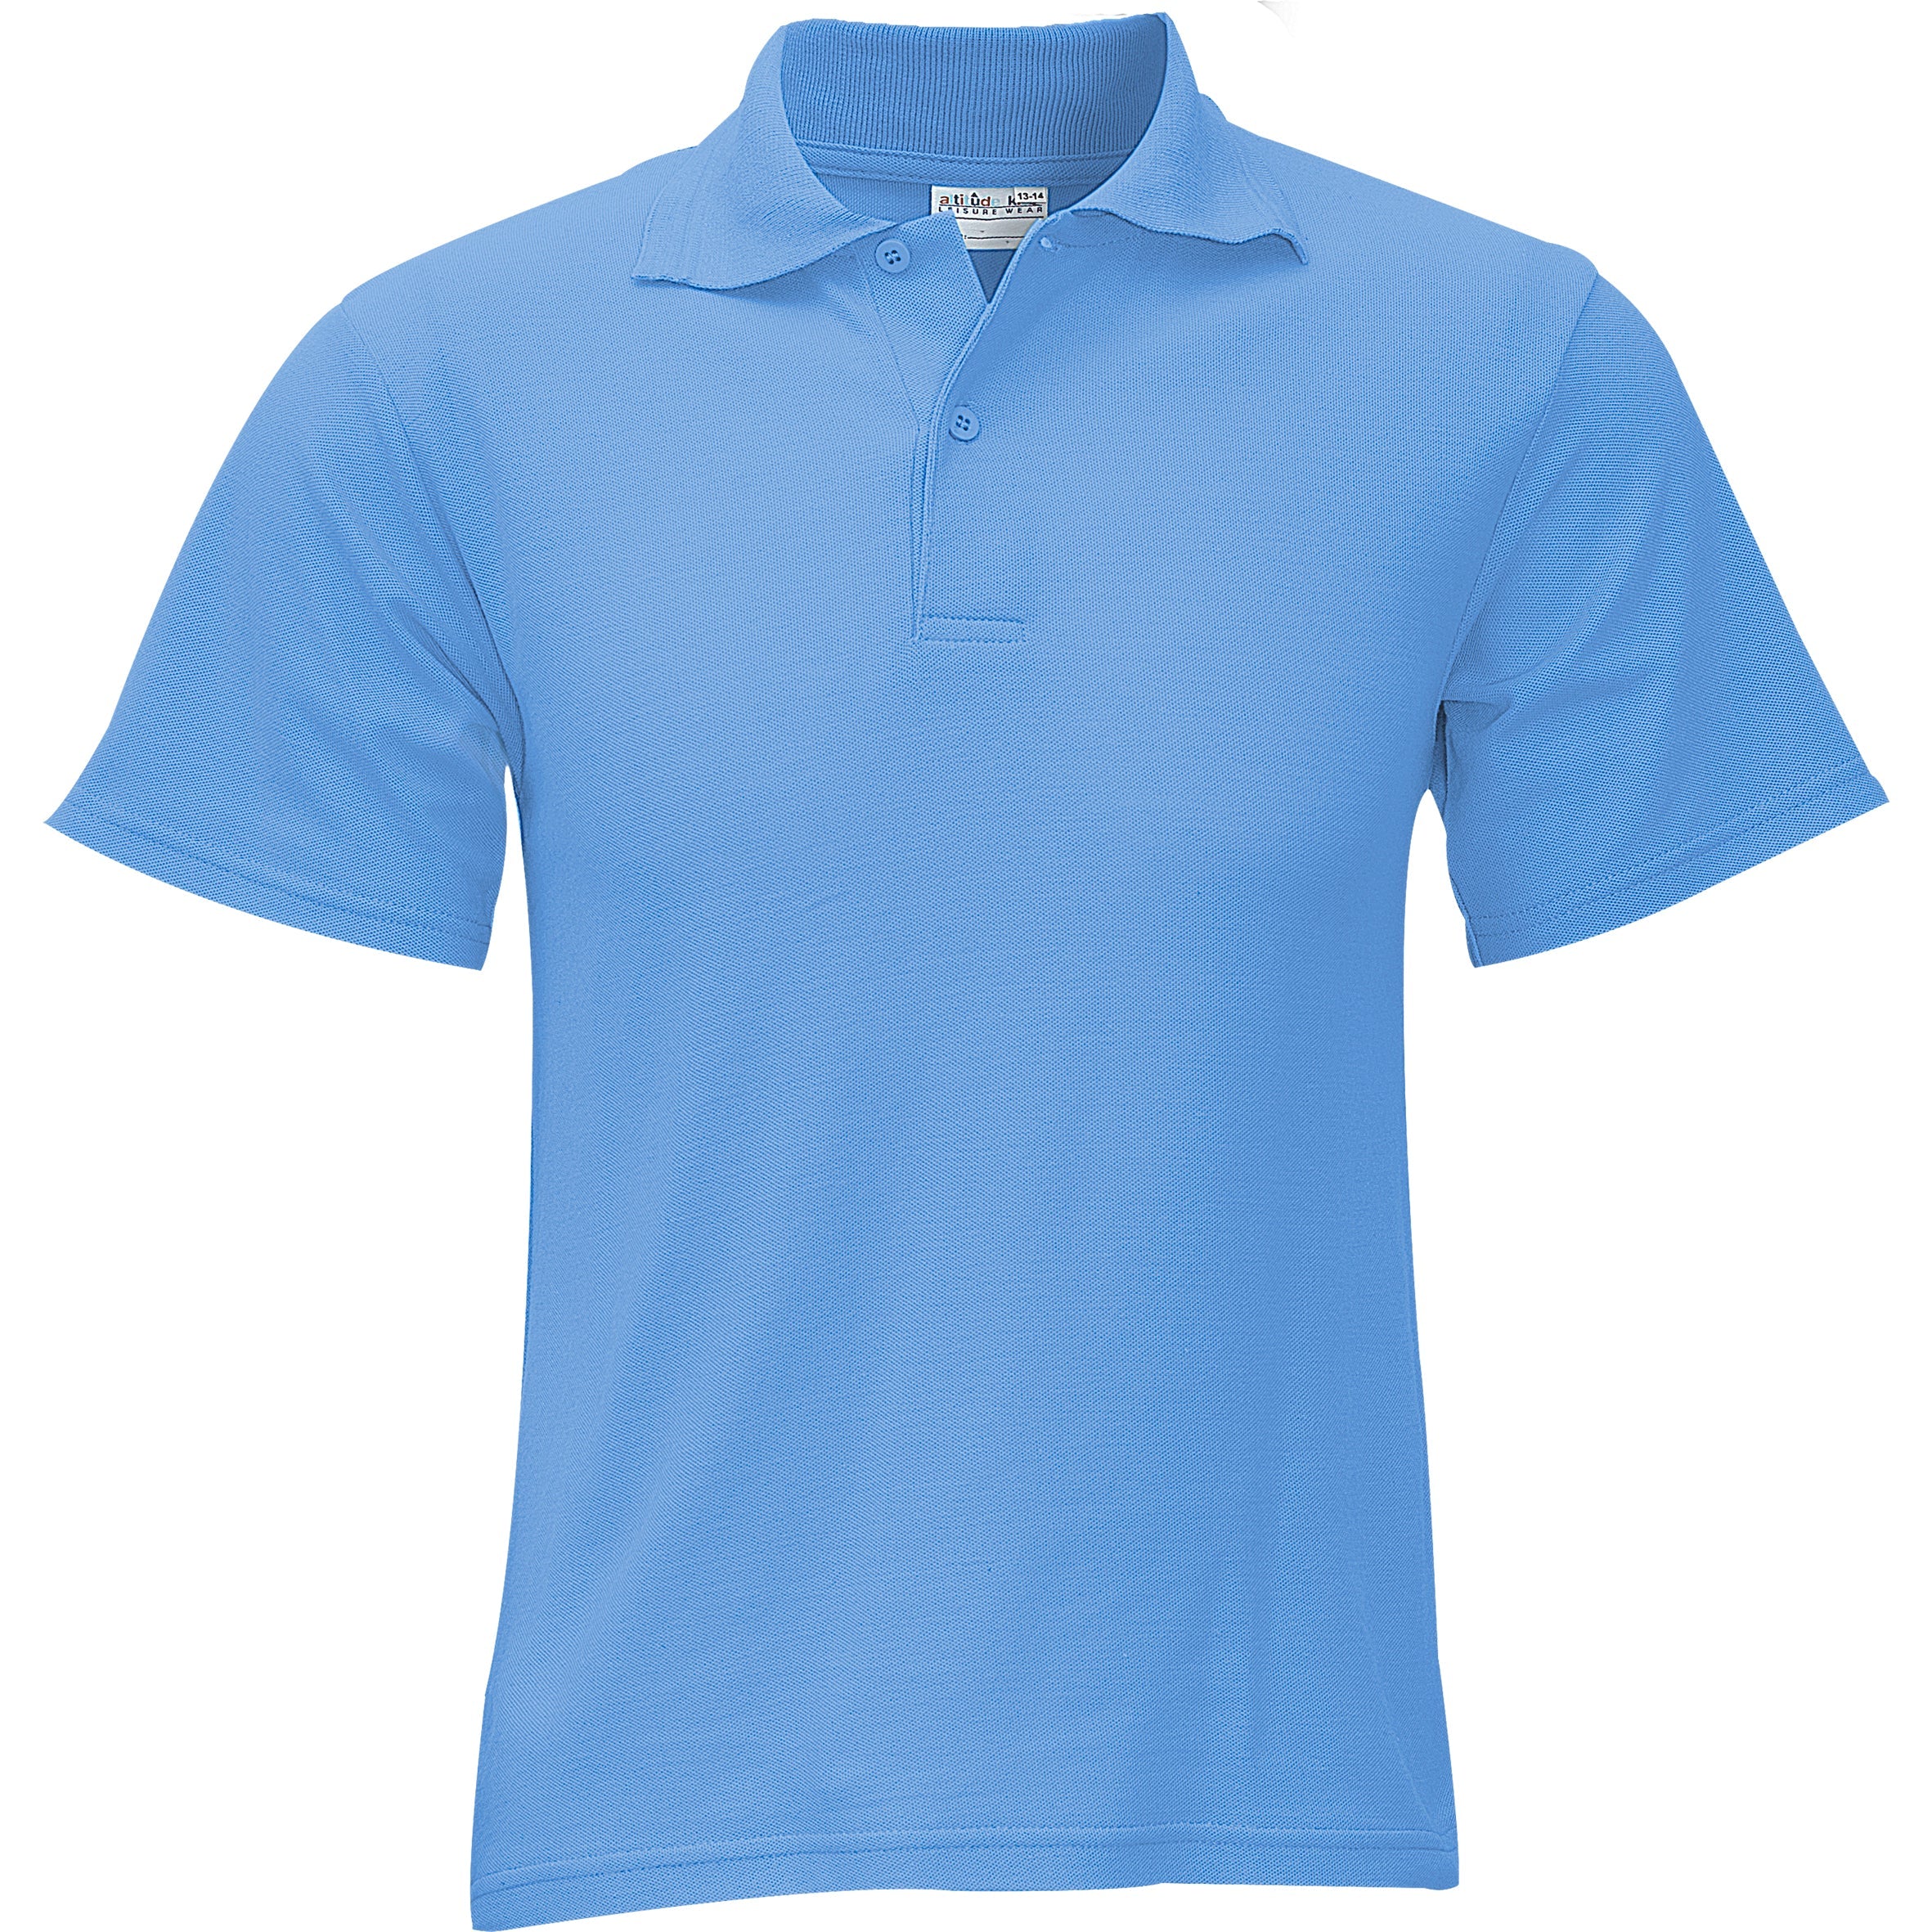 Kids Basic Pique Golf Shirt 4 / Light Blue / LB